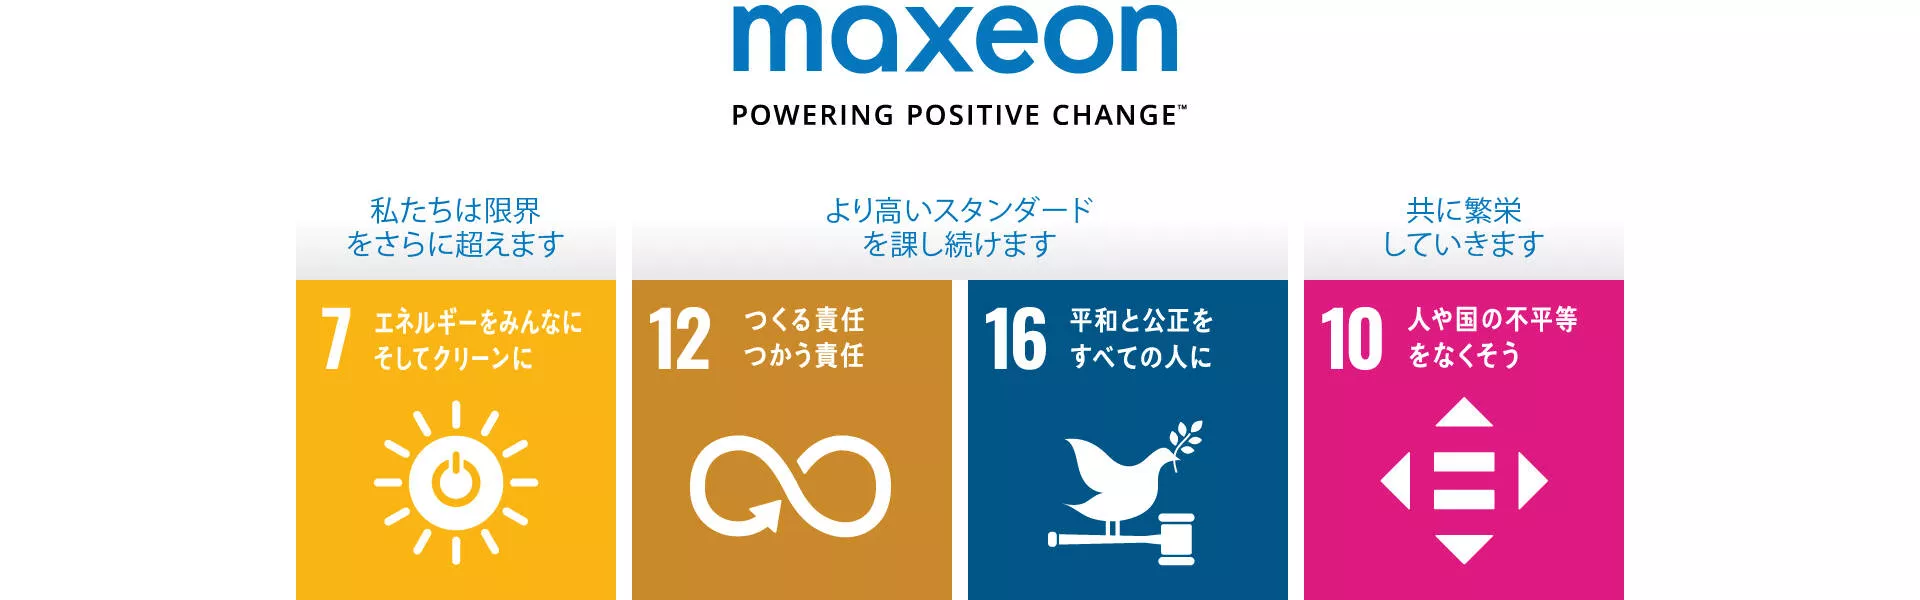 Maxeon SDG 4 goals 